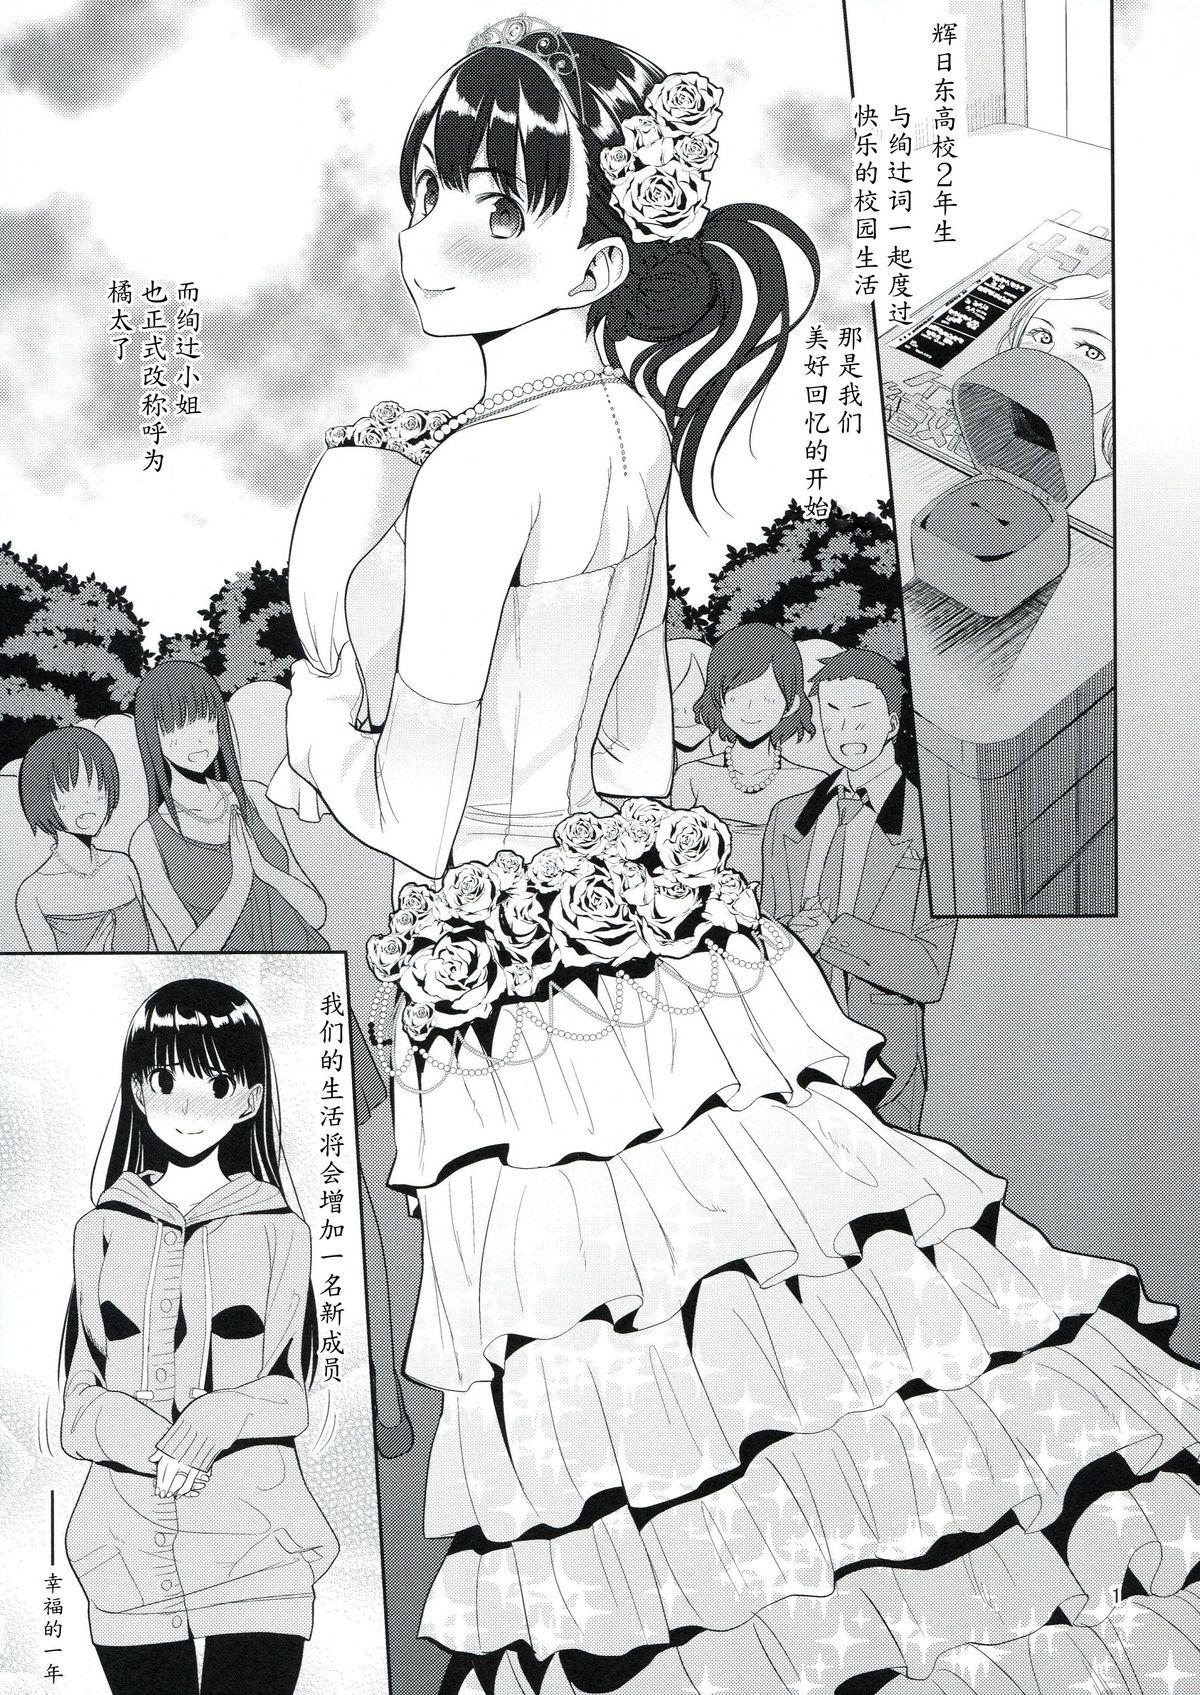 Footjob Koufuku no Conception - Amagami Spread - Page 2